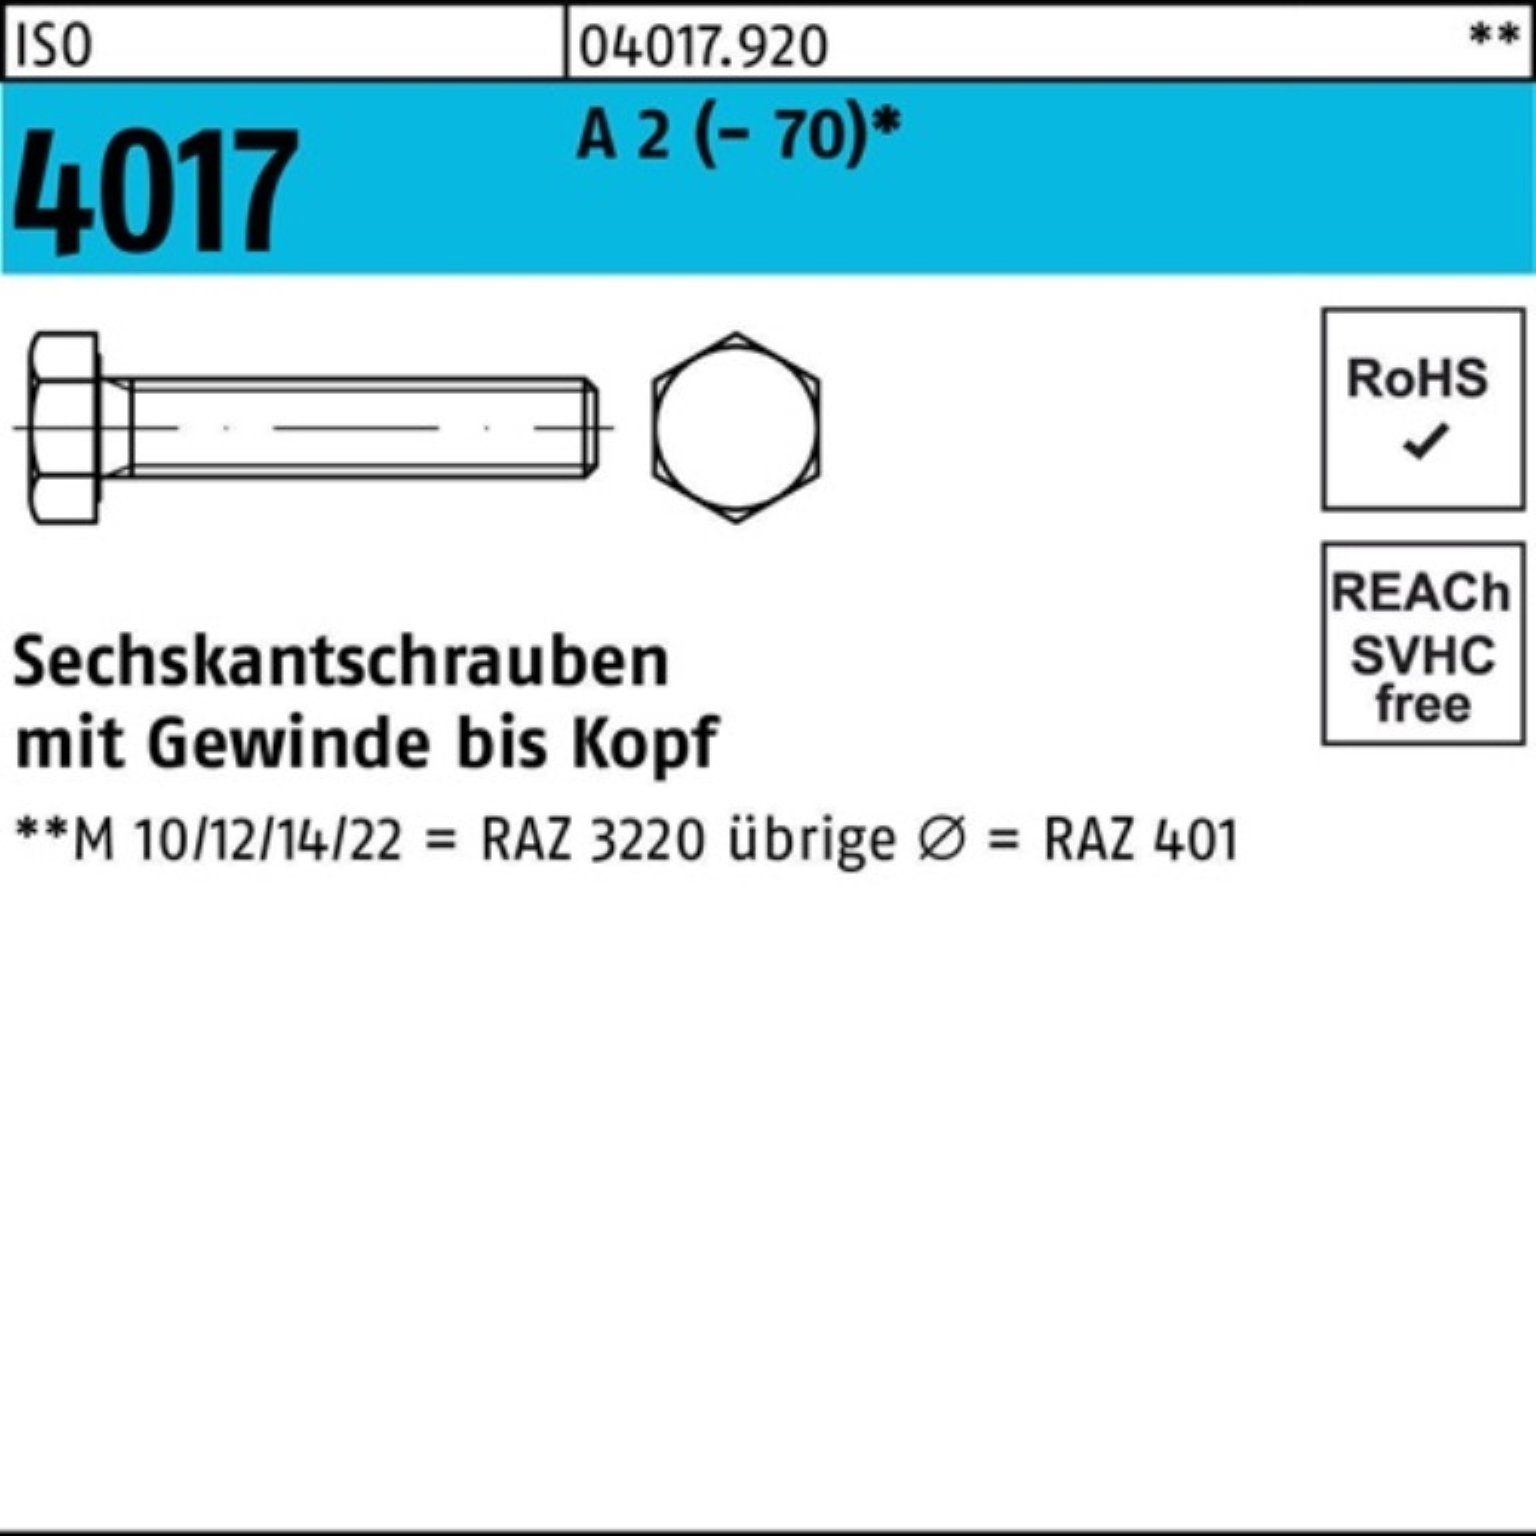 Bufab Sechskantschraube 100er Pack Sechskantschraube ISO 4017 VG M12x 50 A 2 (70) 50 Stück